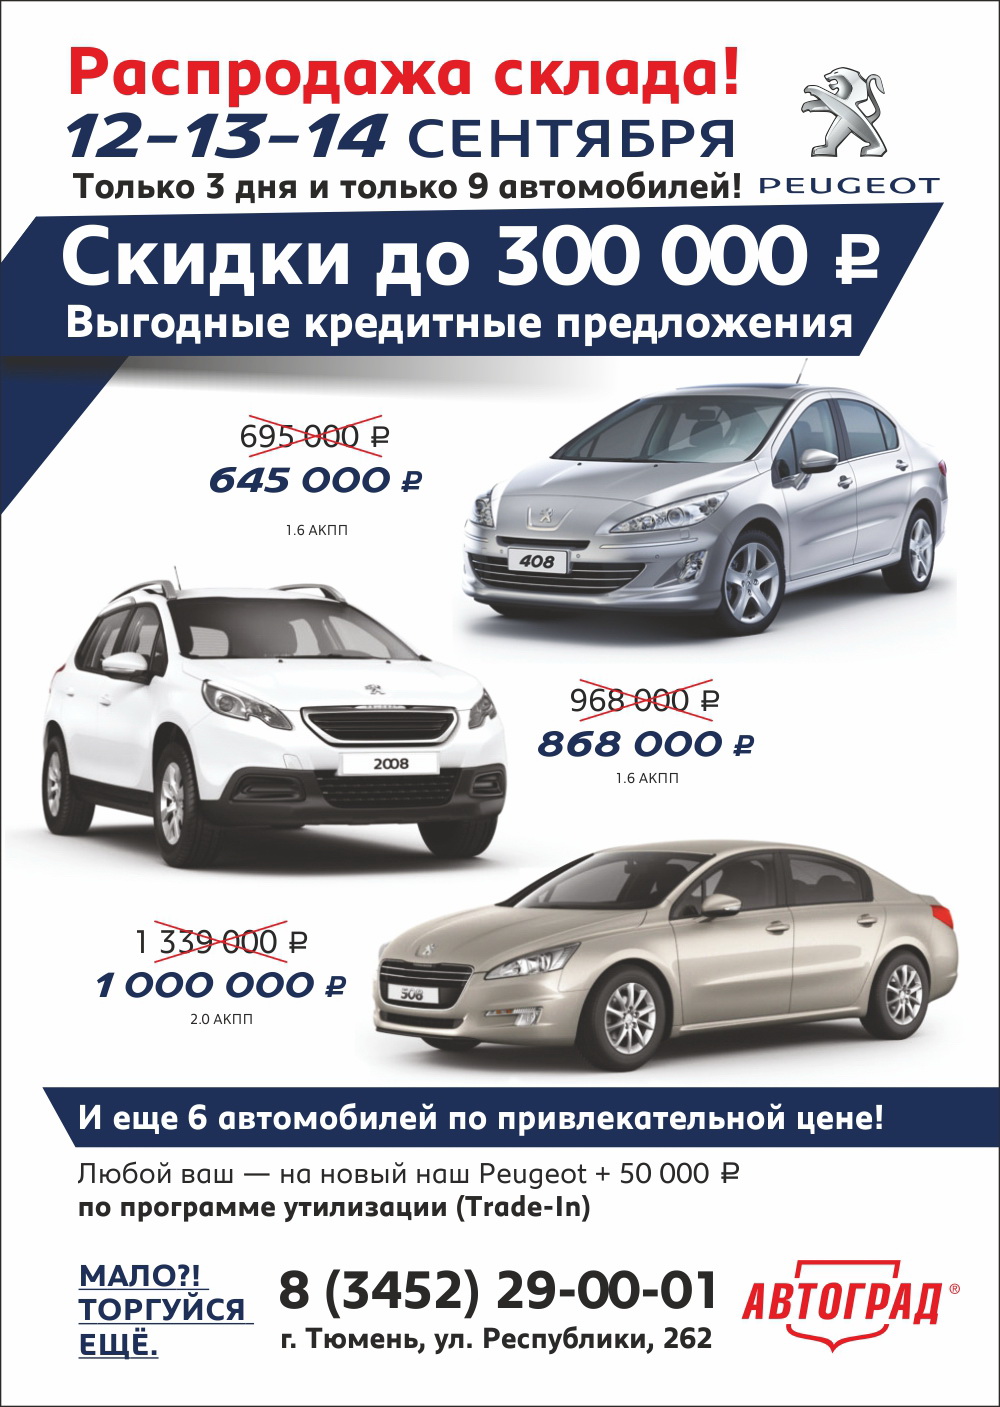 Распродажа! Автомобили Peugeot со скидкой до 300 000 рублей в Автограде!